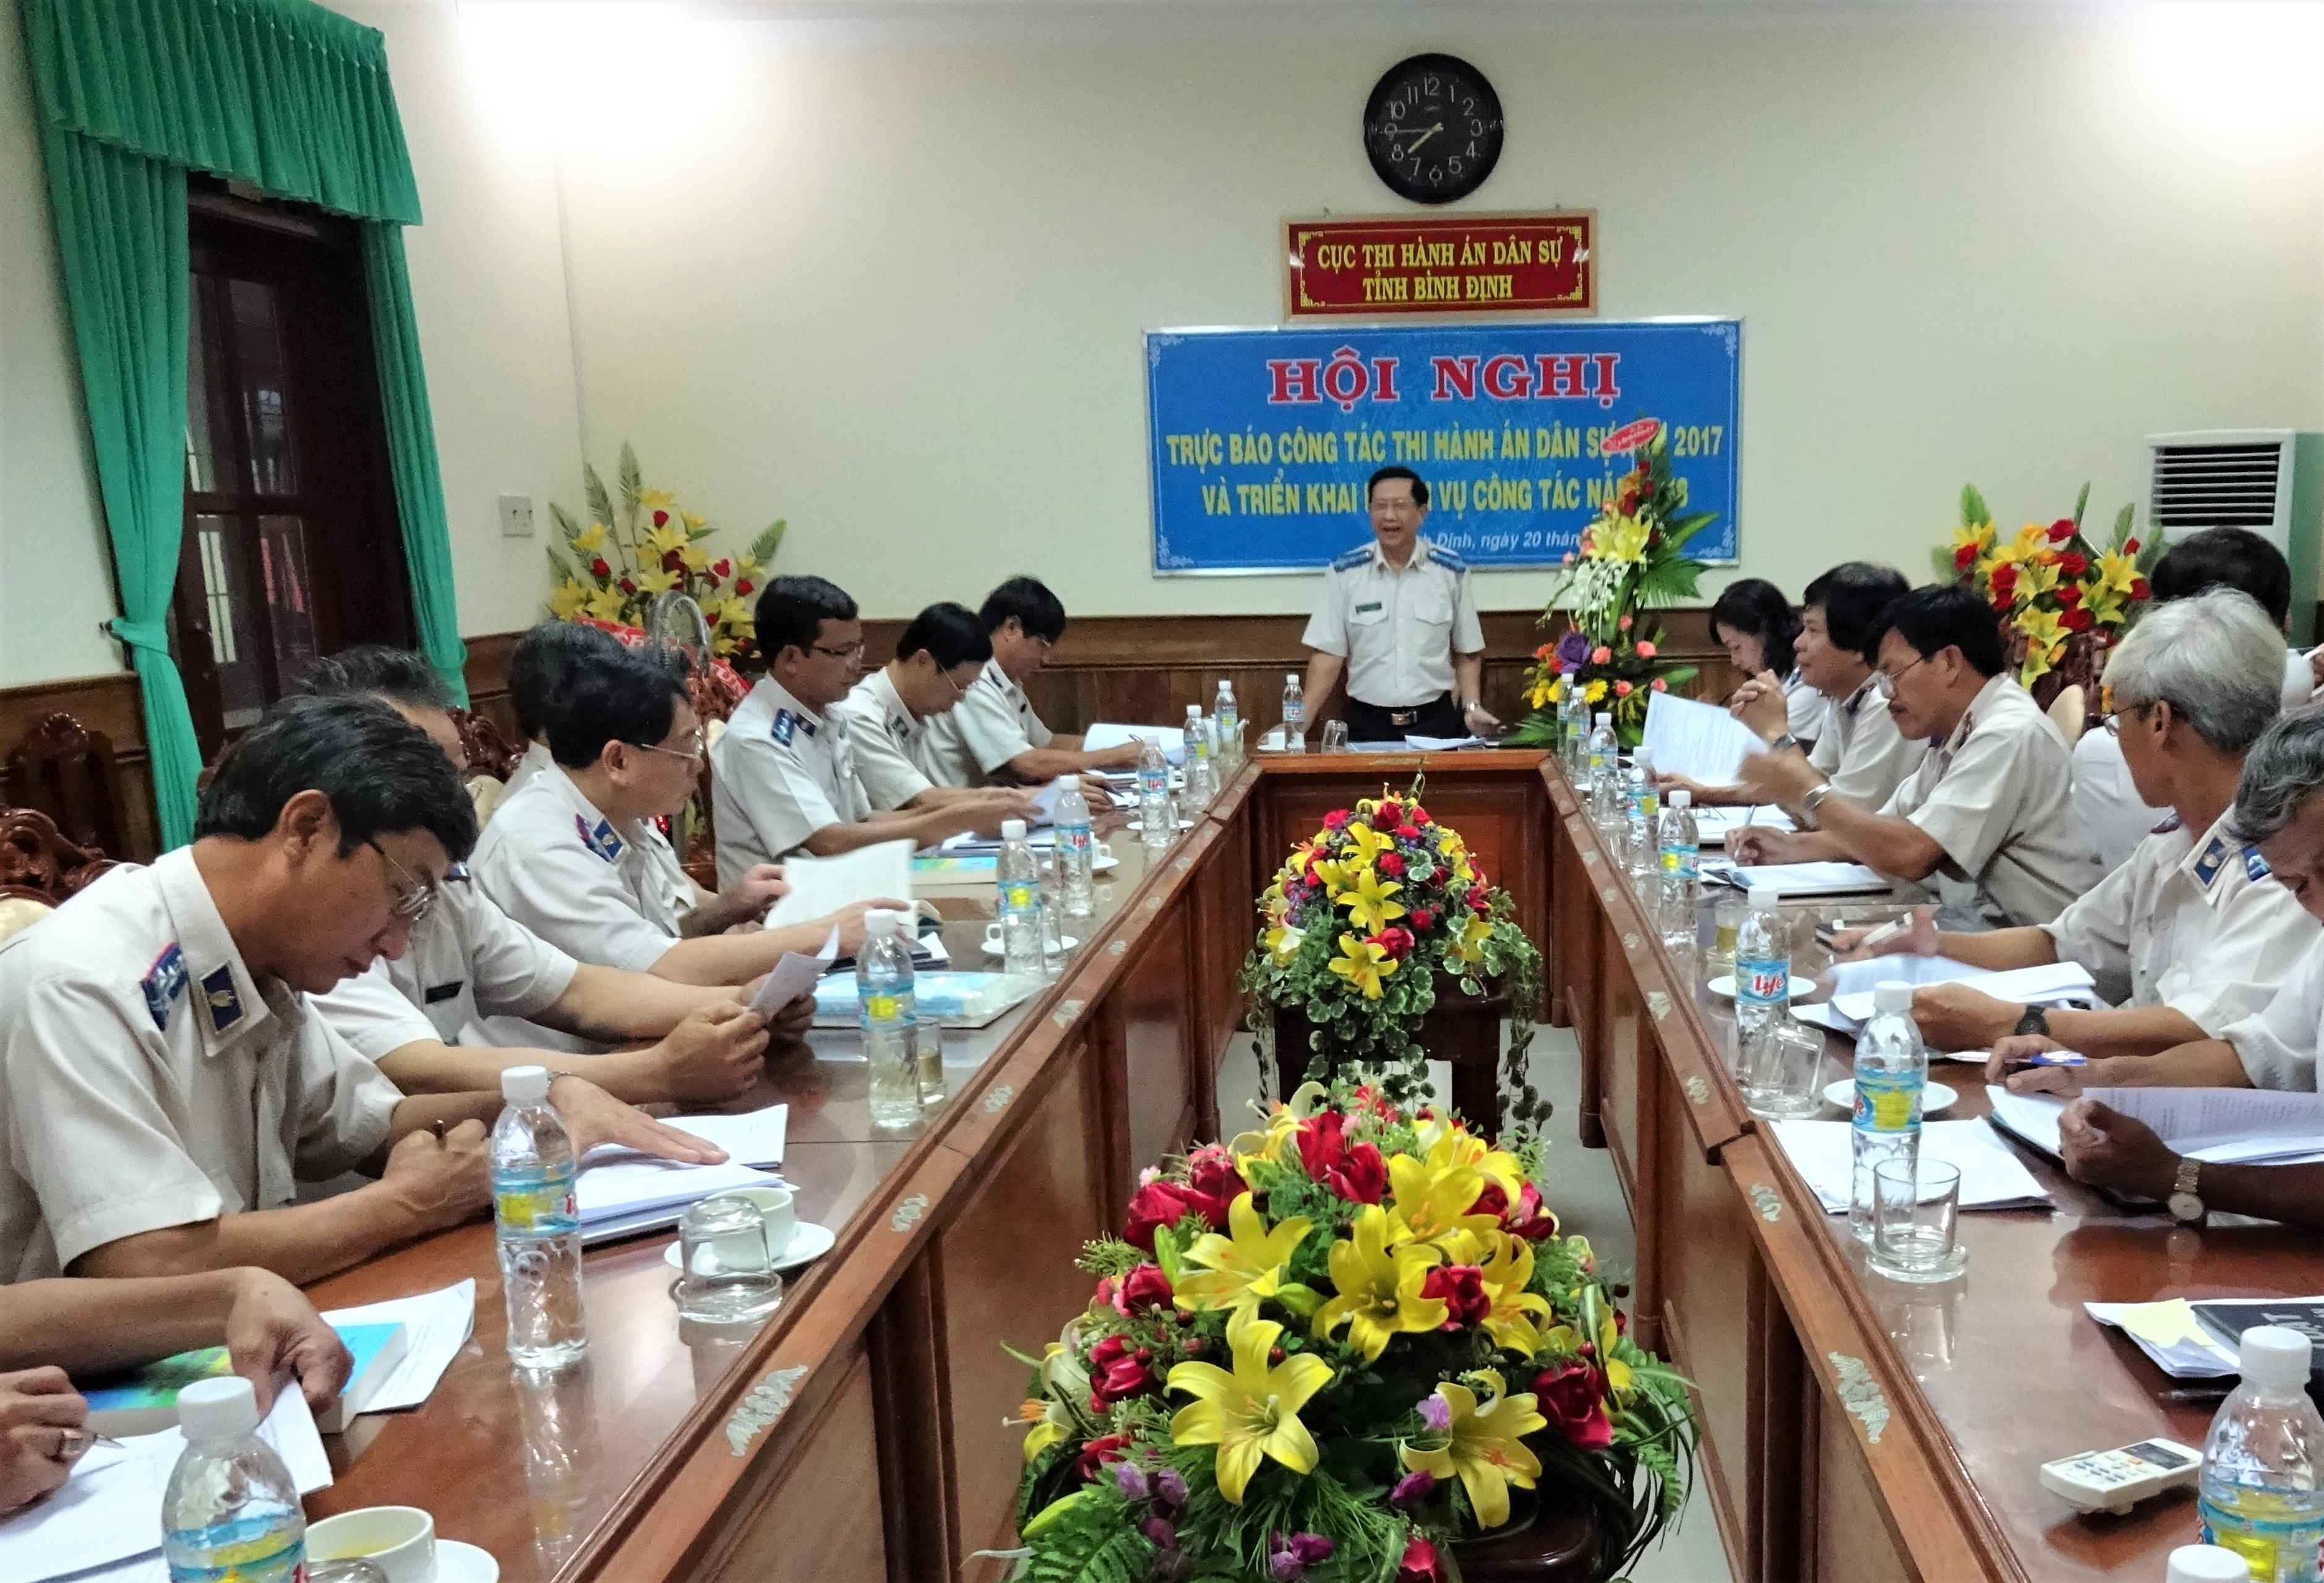 Cục Thi hành án dân sự tỉnh Bình Định tổ chức Hội nghị trực báo công tác Thi hành án dân sự năm 2017 và triển khai một số nhiệm vụ công tác năm 2018